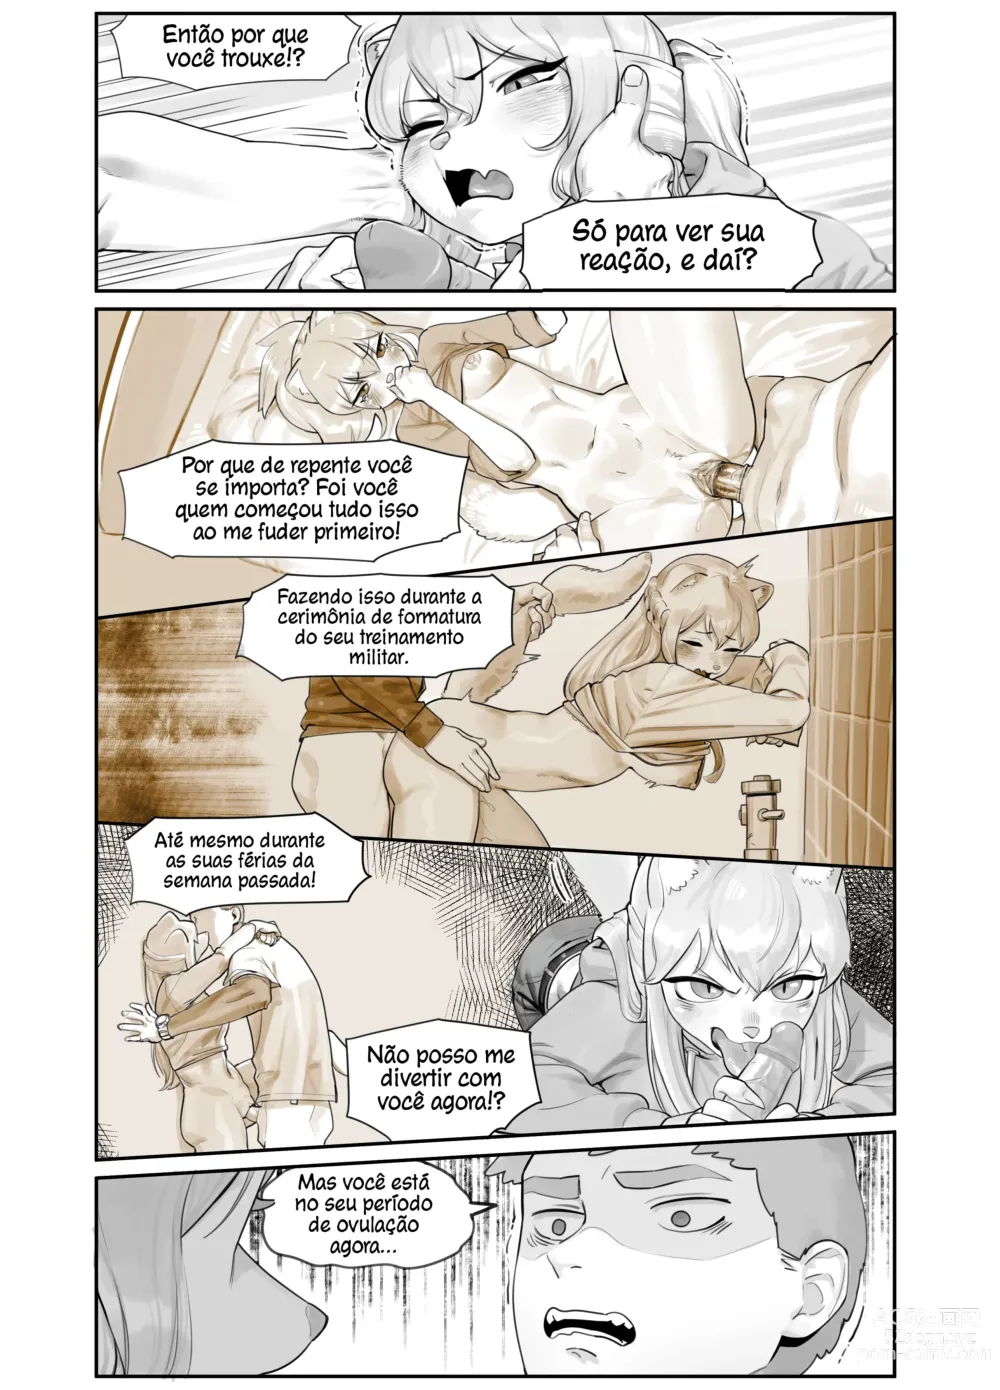 Page 7 of doujinshi Uma Amiga de Infância Suspeitosamente Erótica